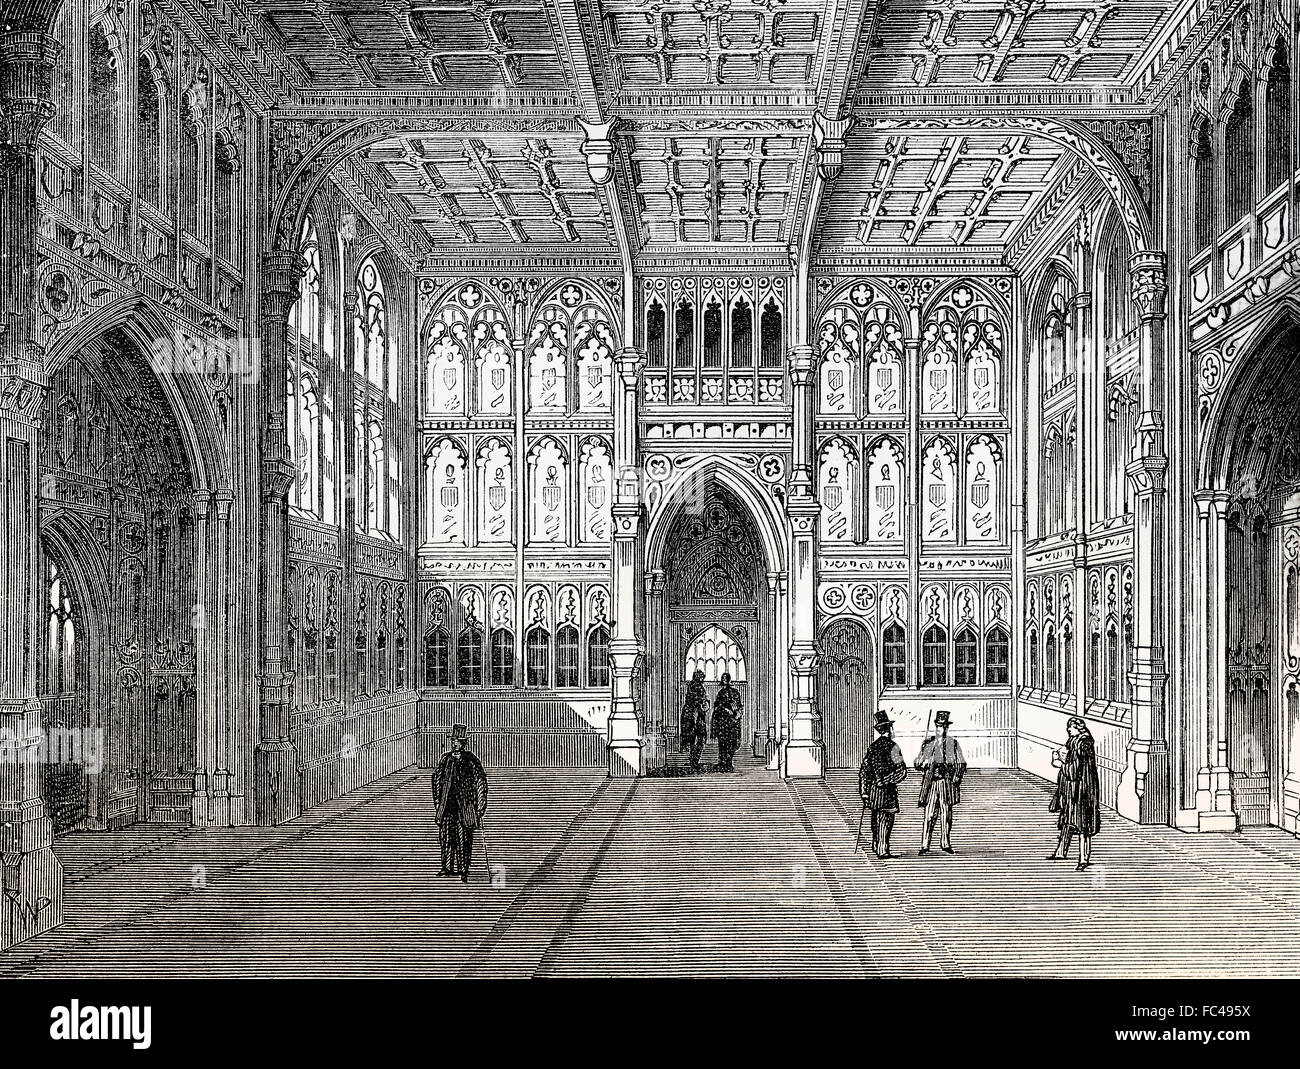 Le hall de la Chambre des communes, 19e siècle, Londres, Angleterre Banque D'Images